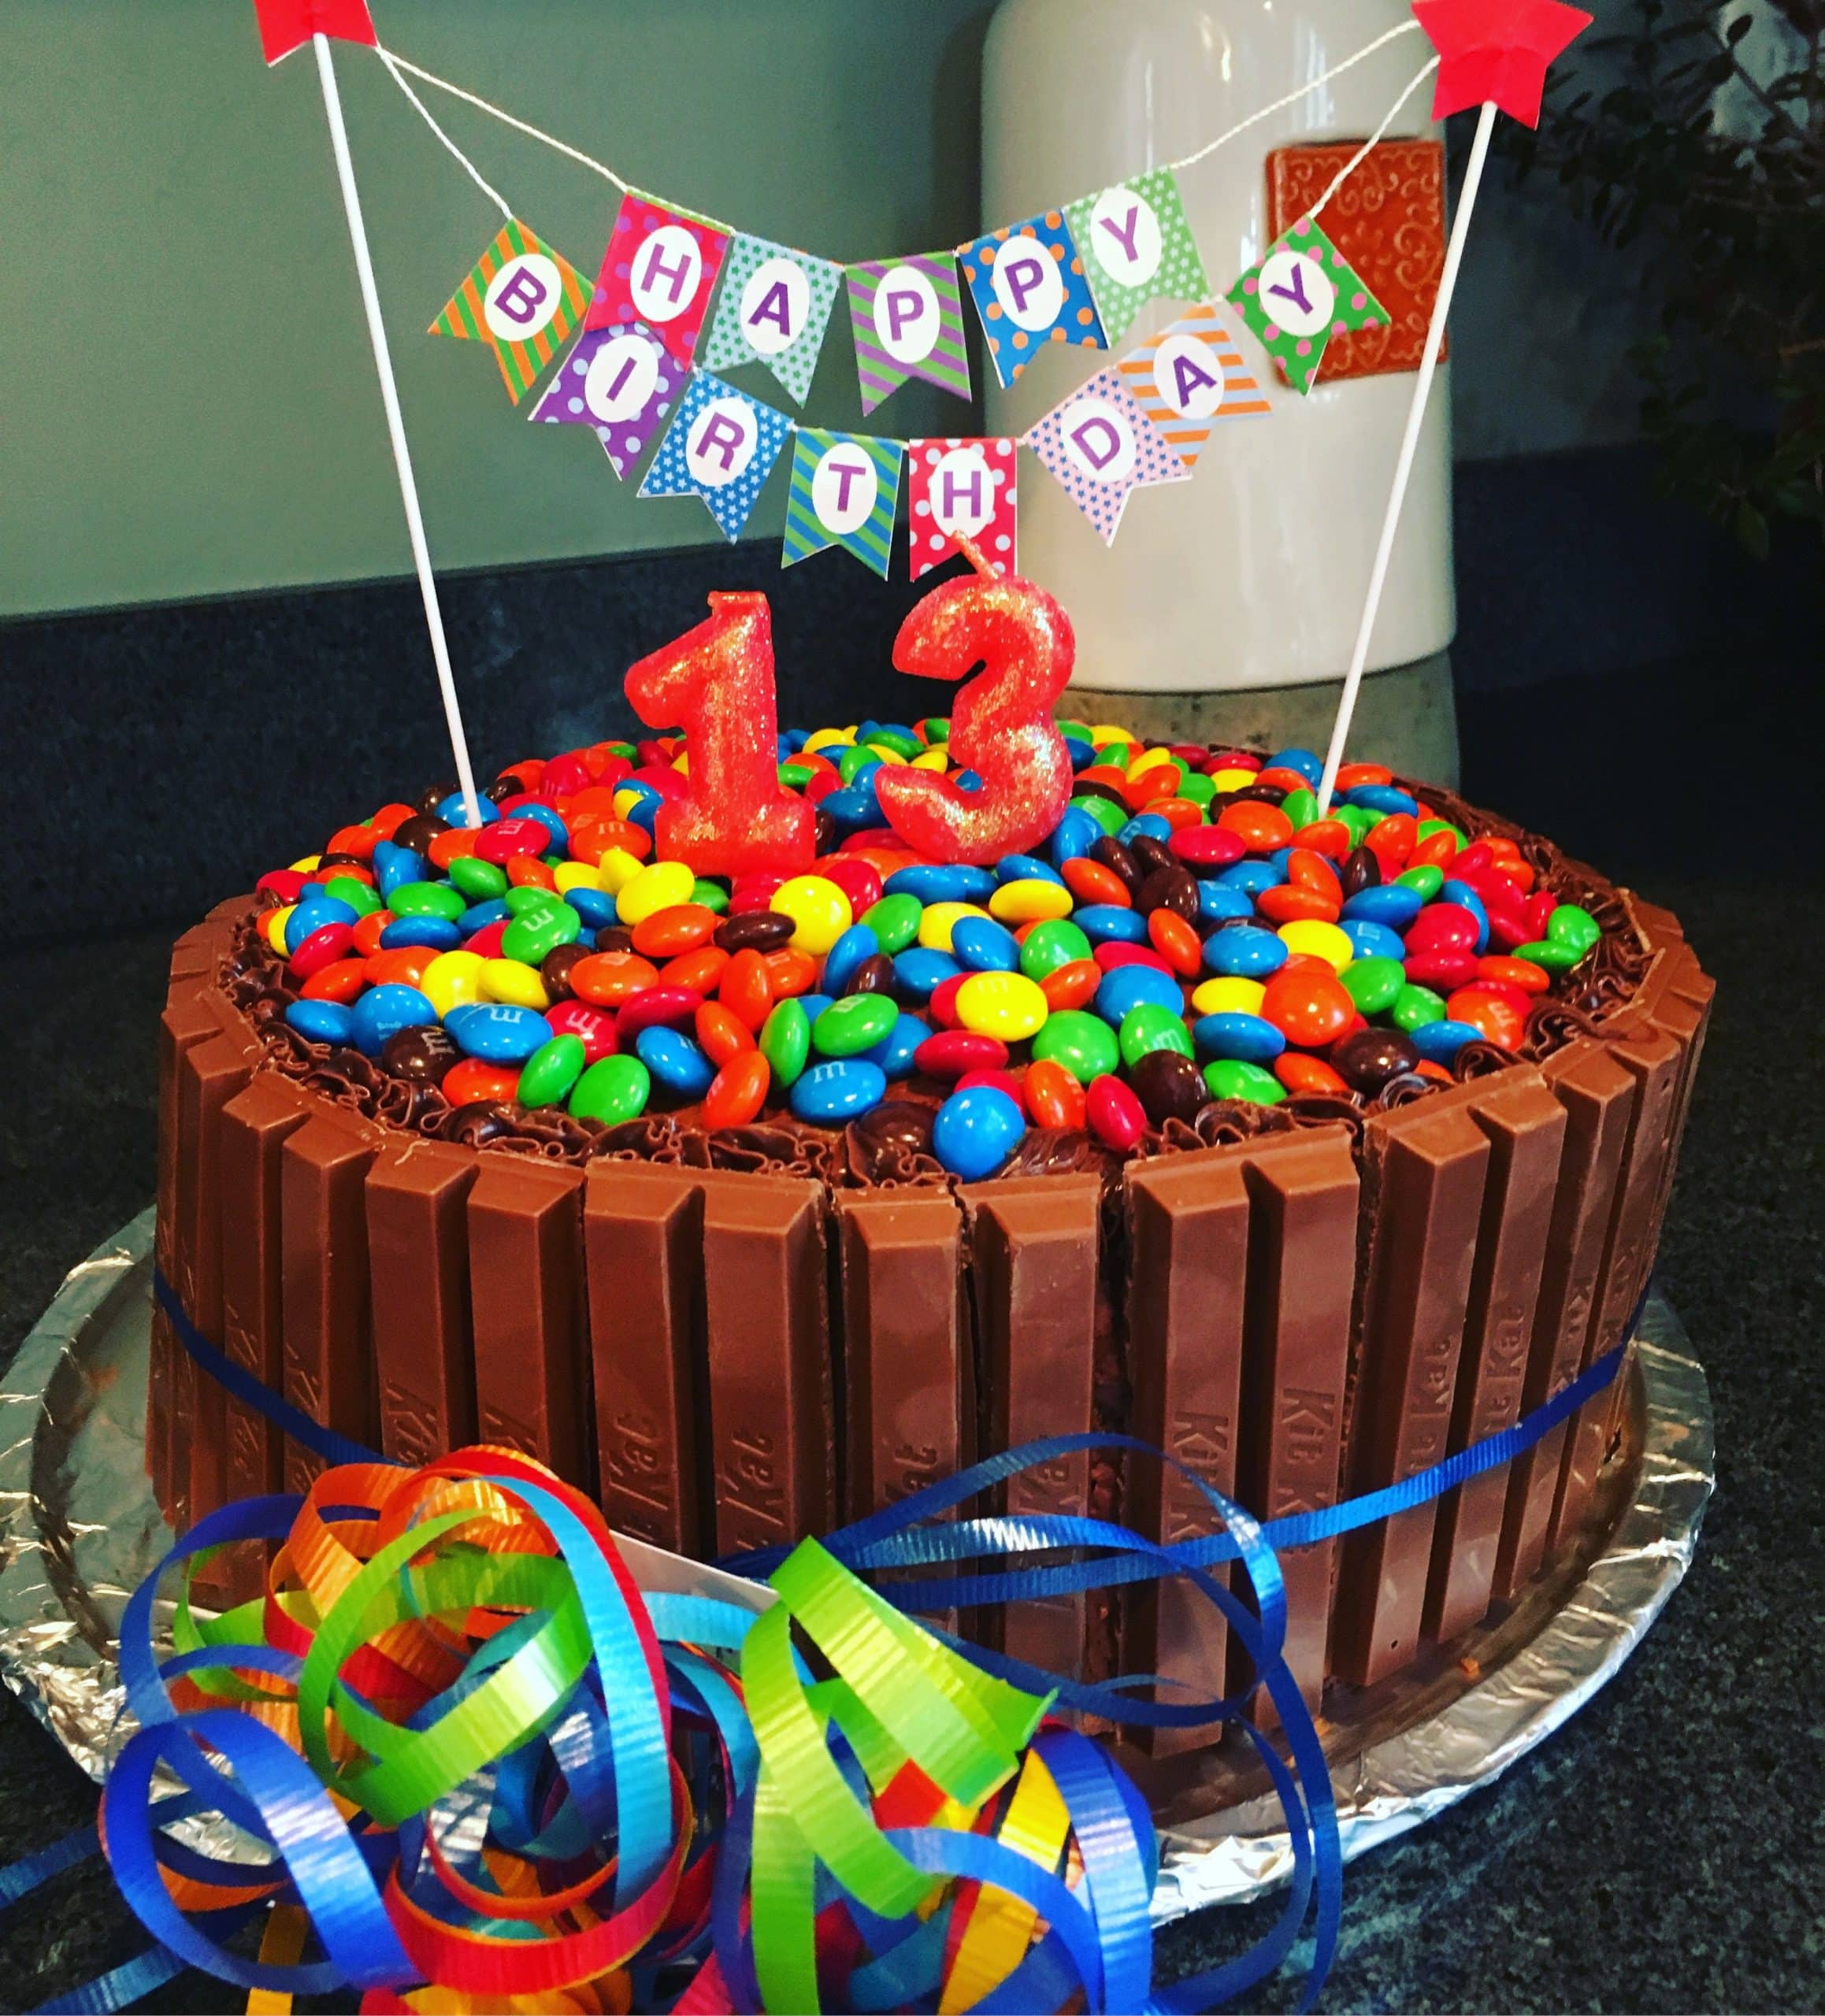 Candy cake, 13th birthday, KitKat cake, happy birthday, boy birthday ...